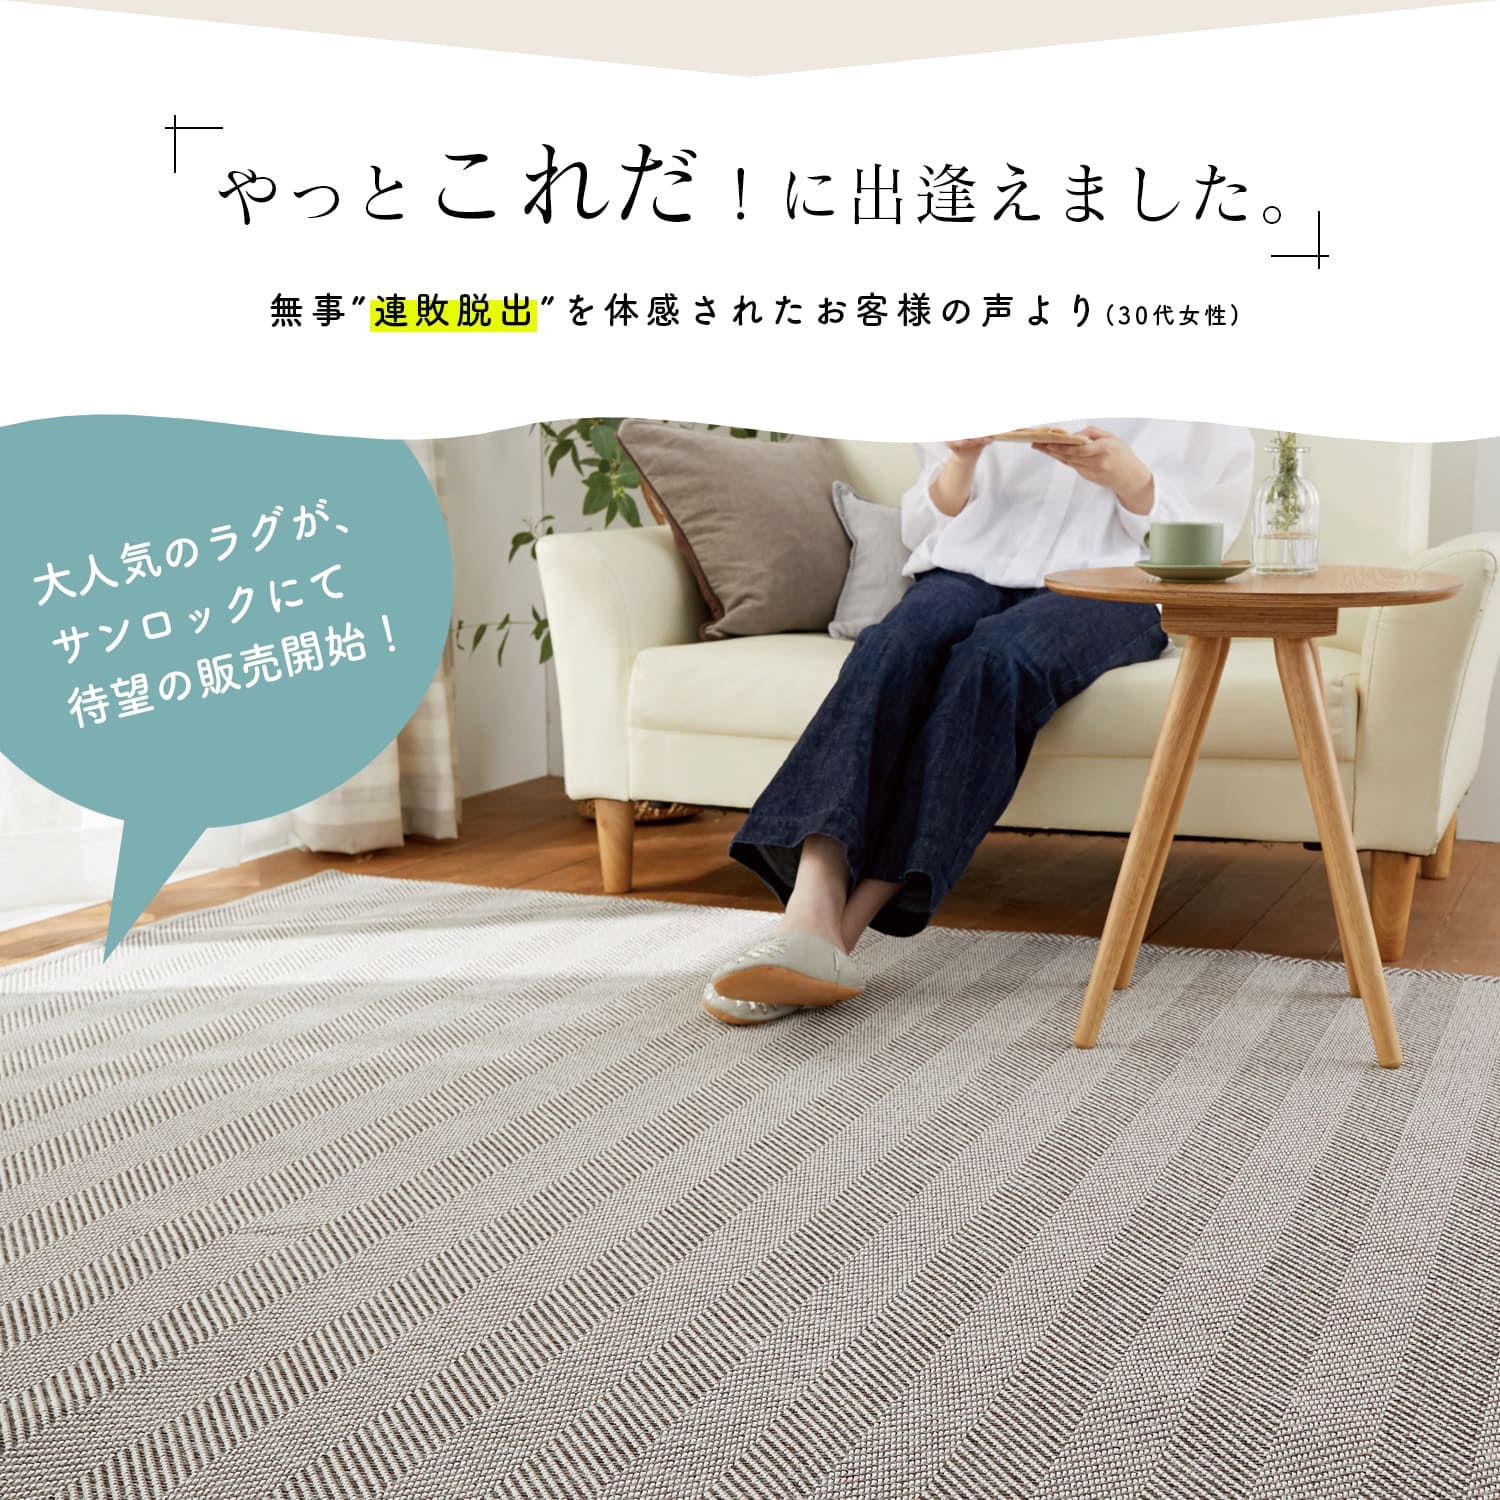 【楽天市場】万能 洗えるラグ リペコ Lサイズ 190×240 長方形 通年 防ダニ 日本製 床暖対応 カーペット マット 絨毯 北欧 ラグ